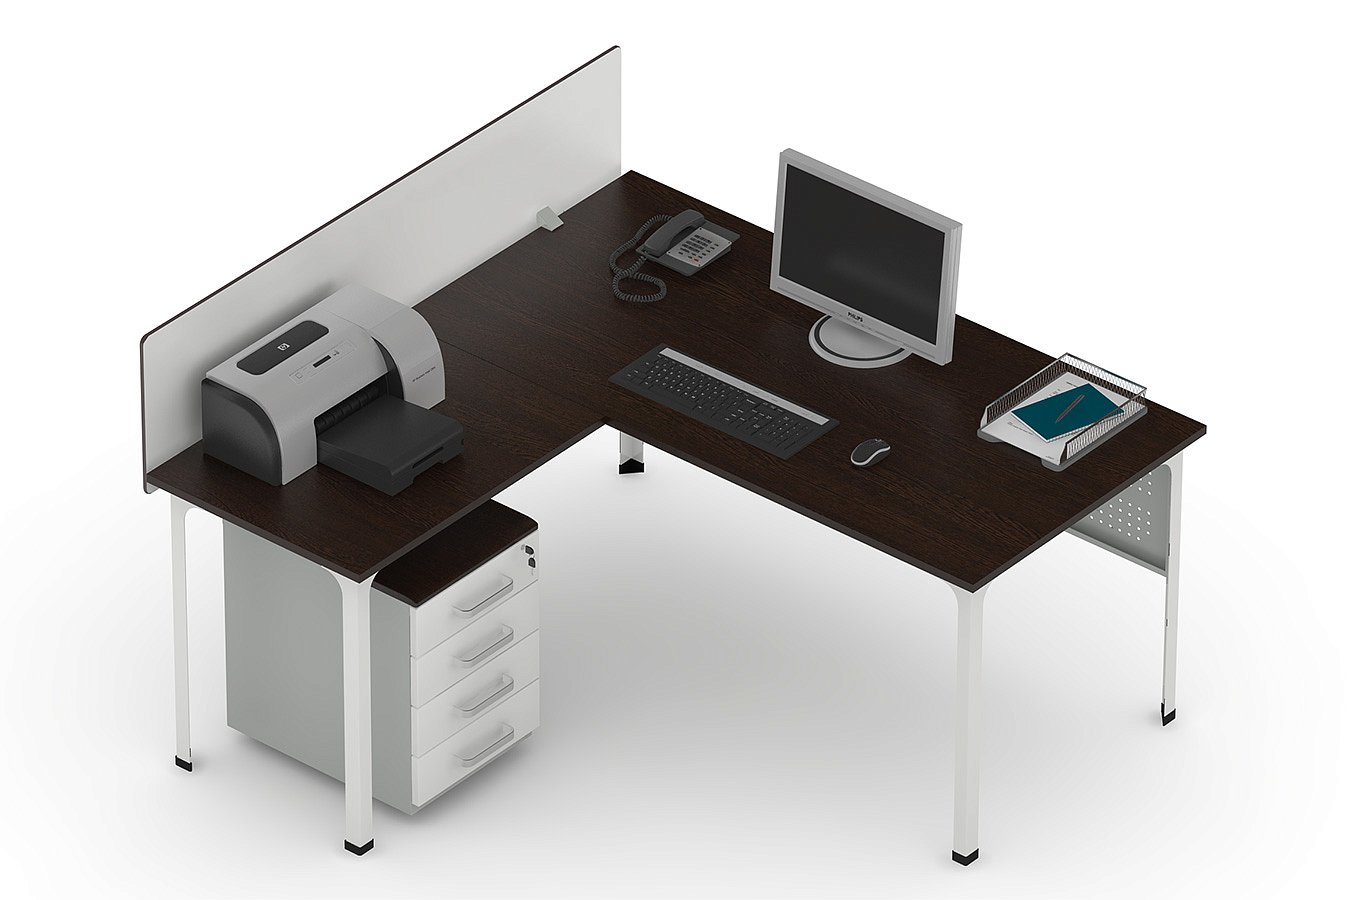 Стол офисный ДиКом П1 с Приставкой и Экраном (ширина 1800)